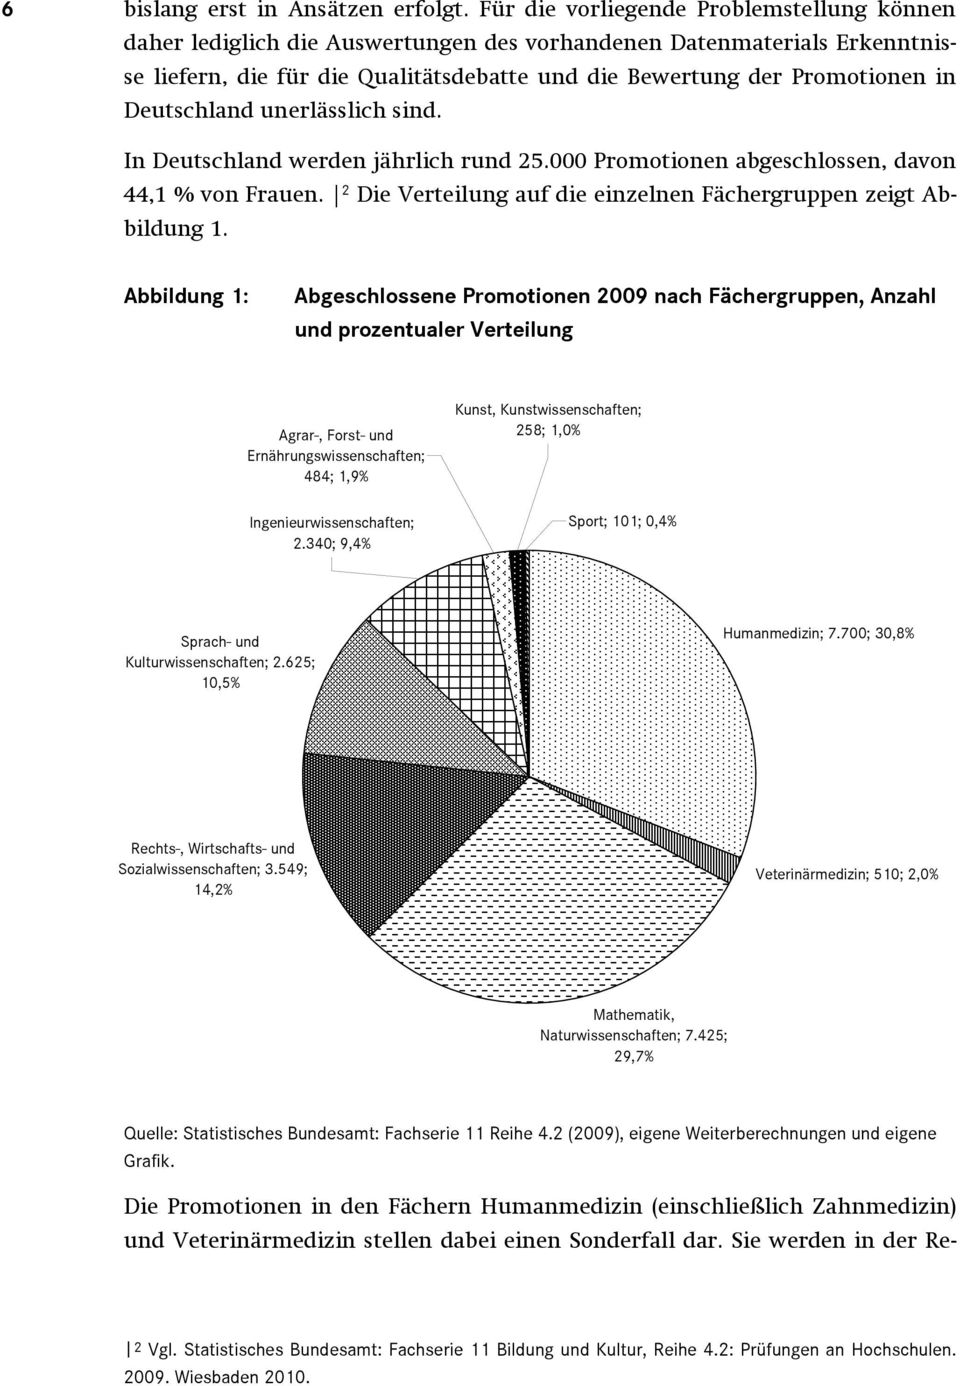 Deutschland unerlässlich sind. In Deutschland werden jährlich rund 25.000 Promotionen abgeschlossen, davon 44,1 % von Frauen. 2 Die Verteilung auf die einzelnen Fächergruppen zeigt Abbildung 1.